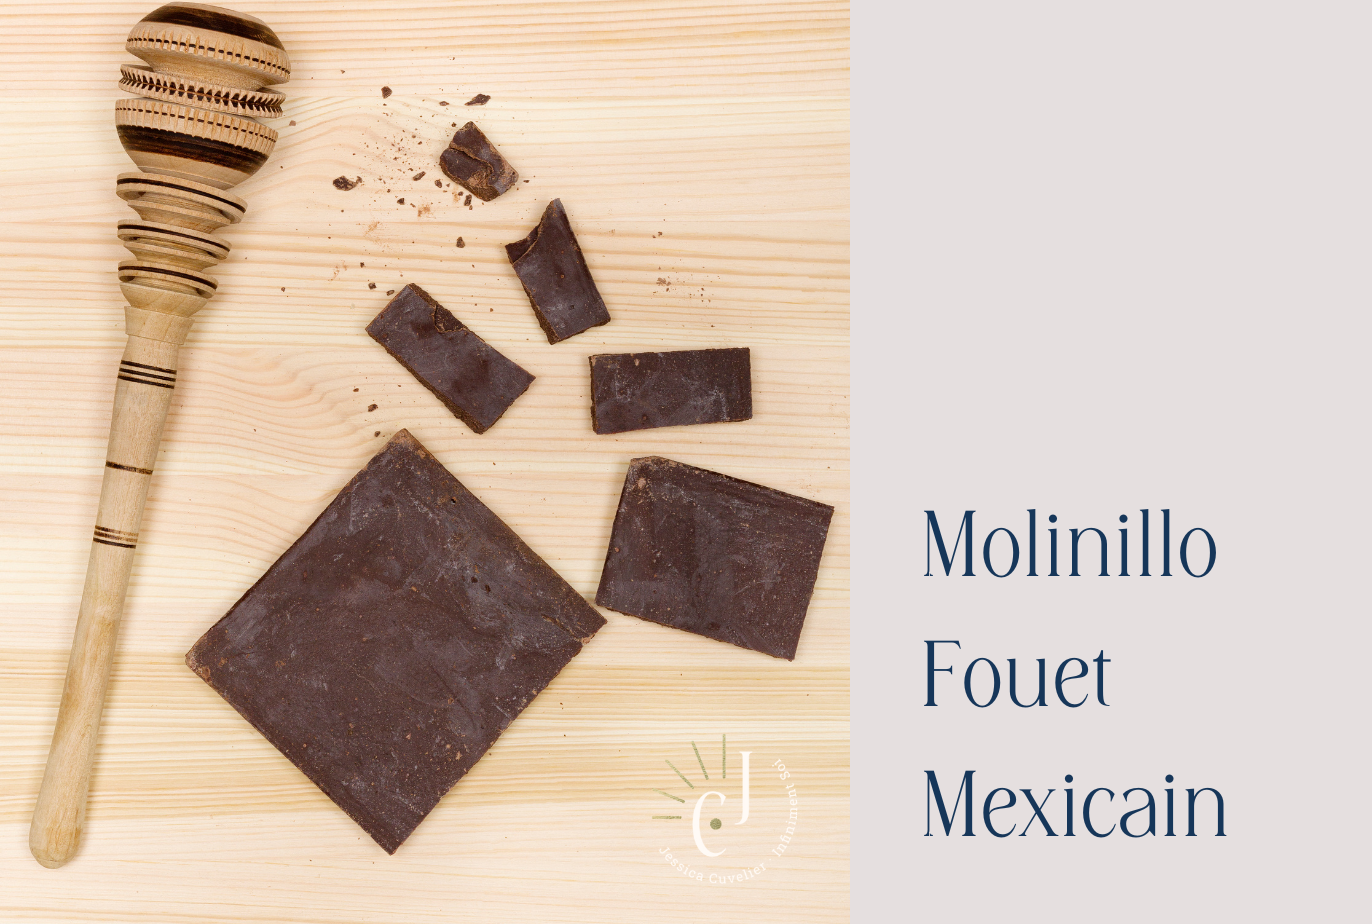 Molinillo - Fouet Mexicain